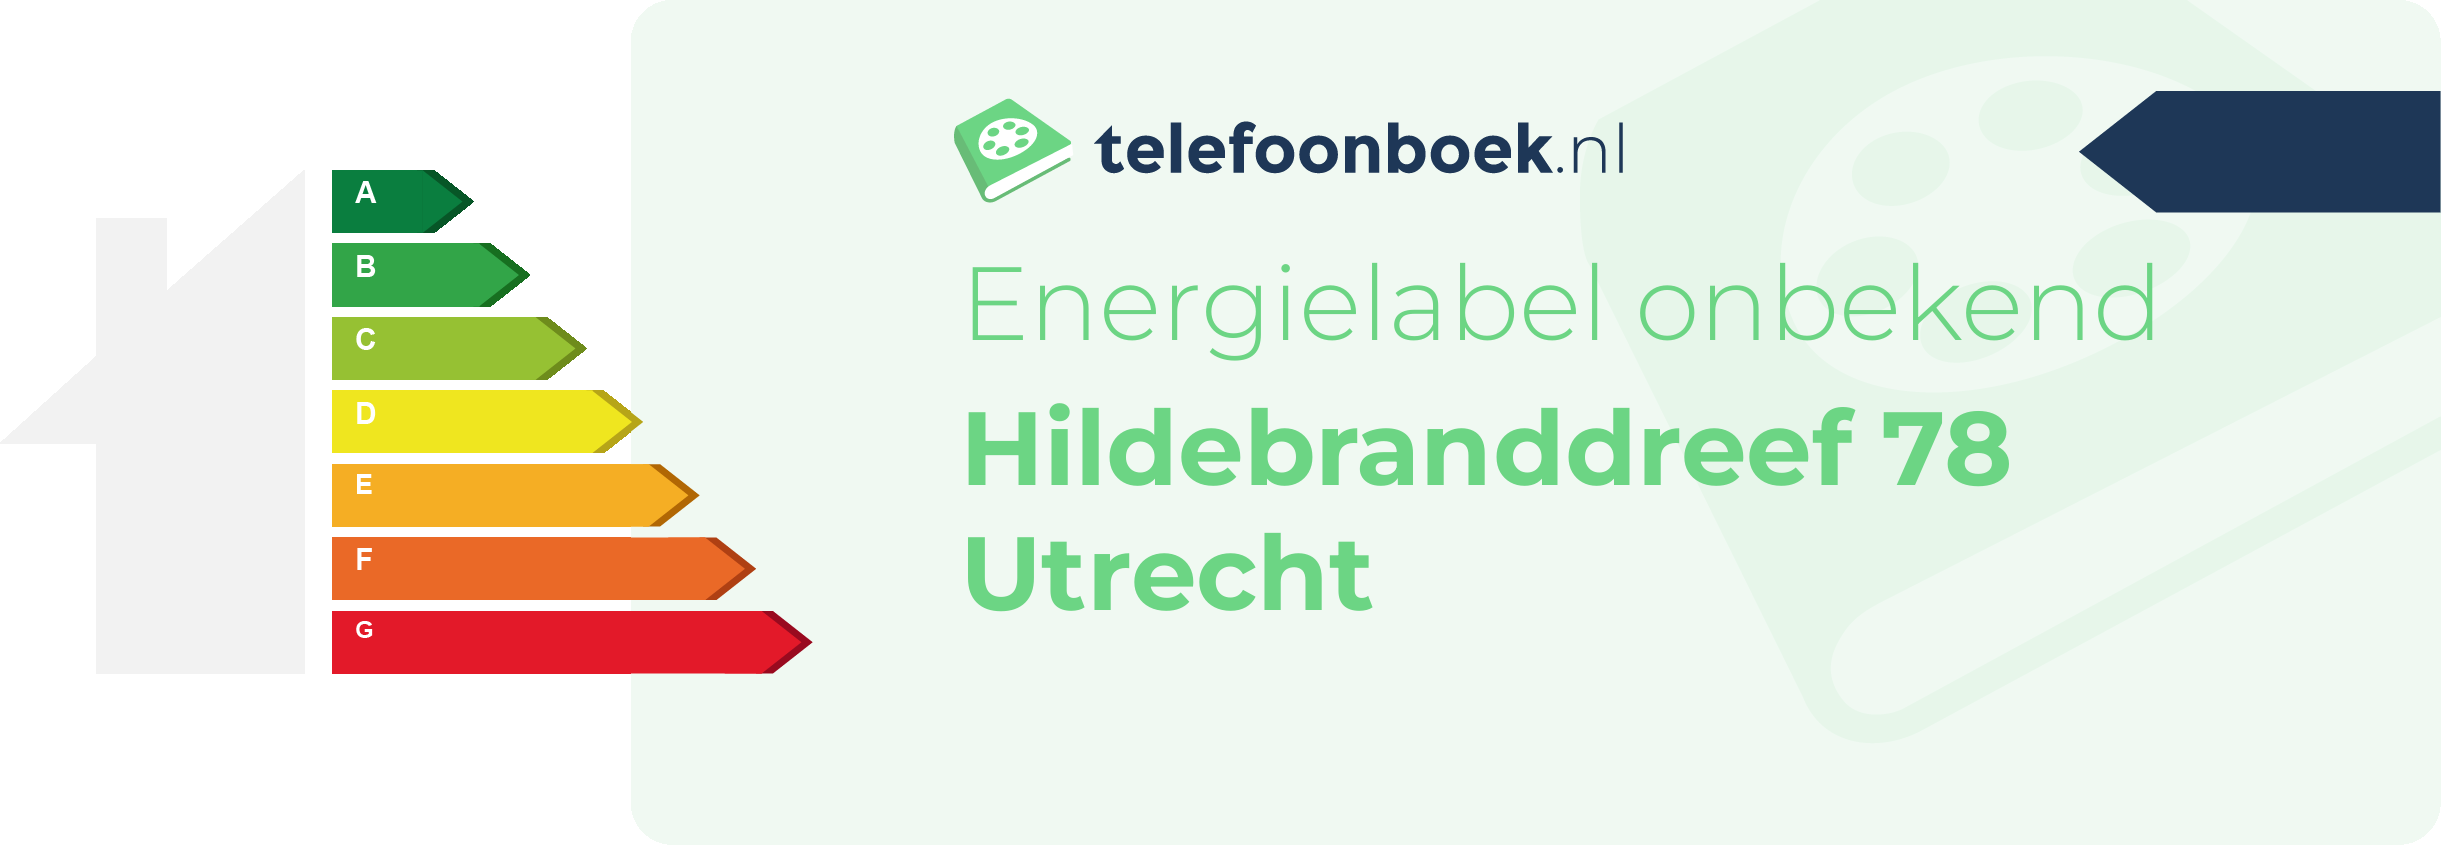 Energielabel Hildebranddreef 78 Utrecht